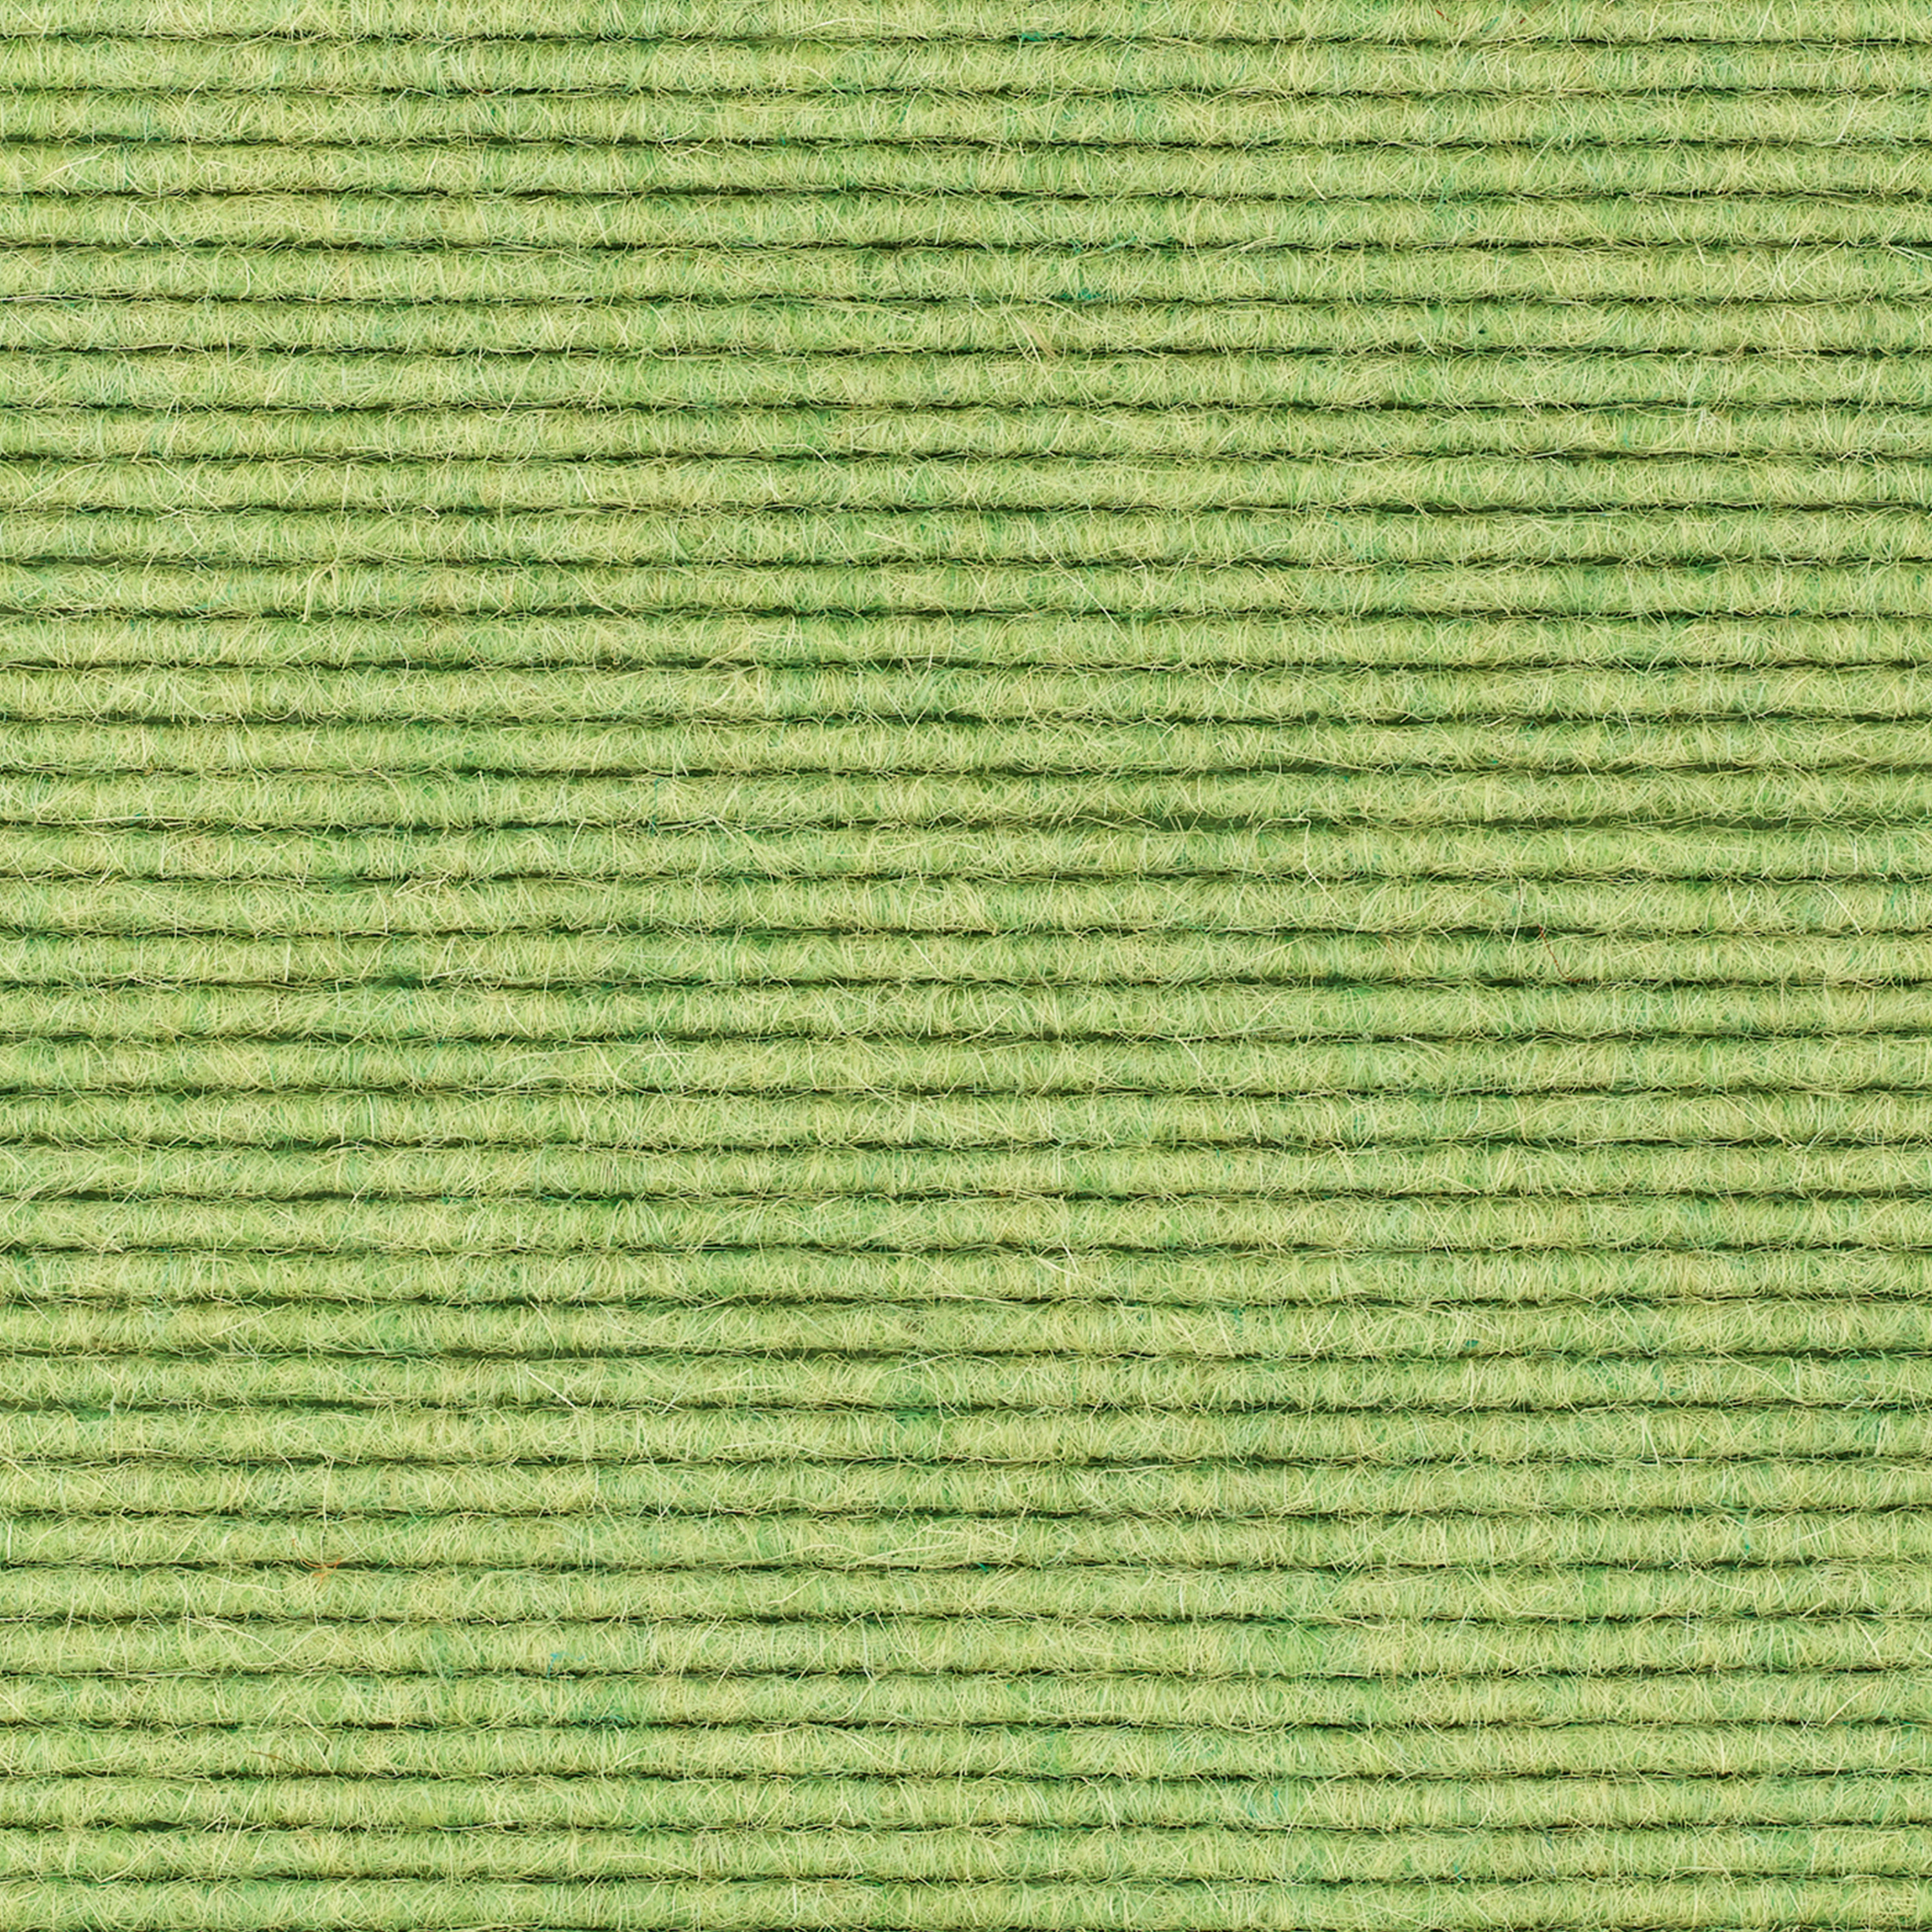 tretford-Teppich 'Wasabi (622)', 2 x 2 m, gekettelt